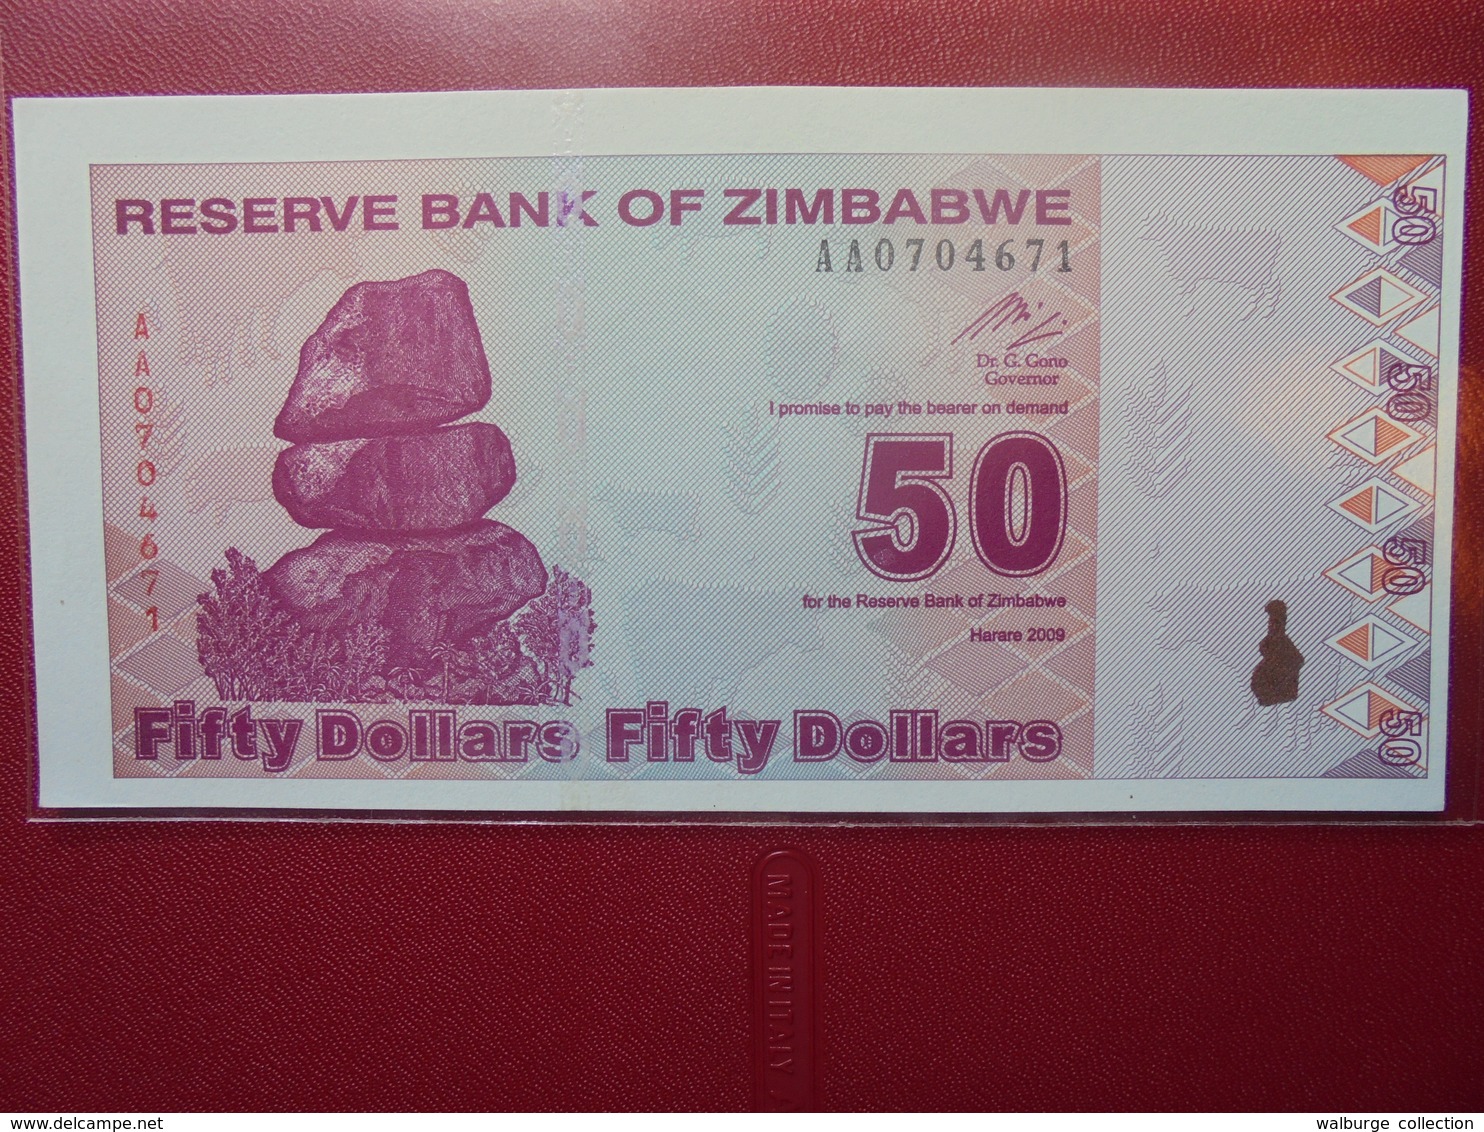 ZIMBABWE 50 $ 2009 PEU CIRCULER/NEUF - Zimbabwe